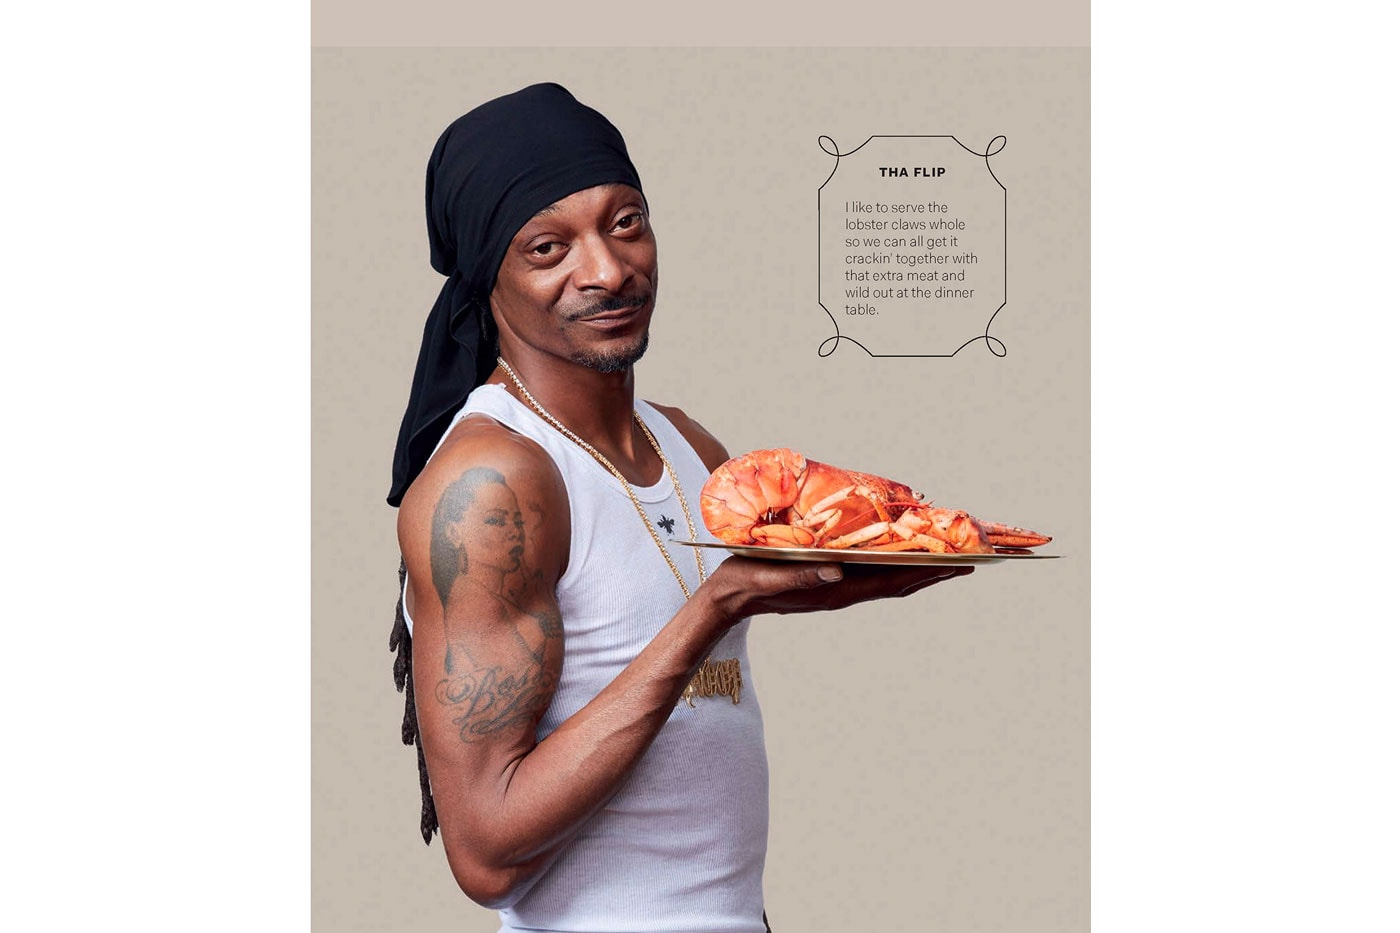 狗爺教你做菜！Snoop Dogg 推出首本個人菜譜「From Crook to Cook」